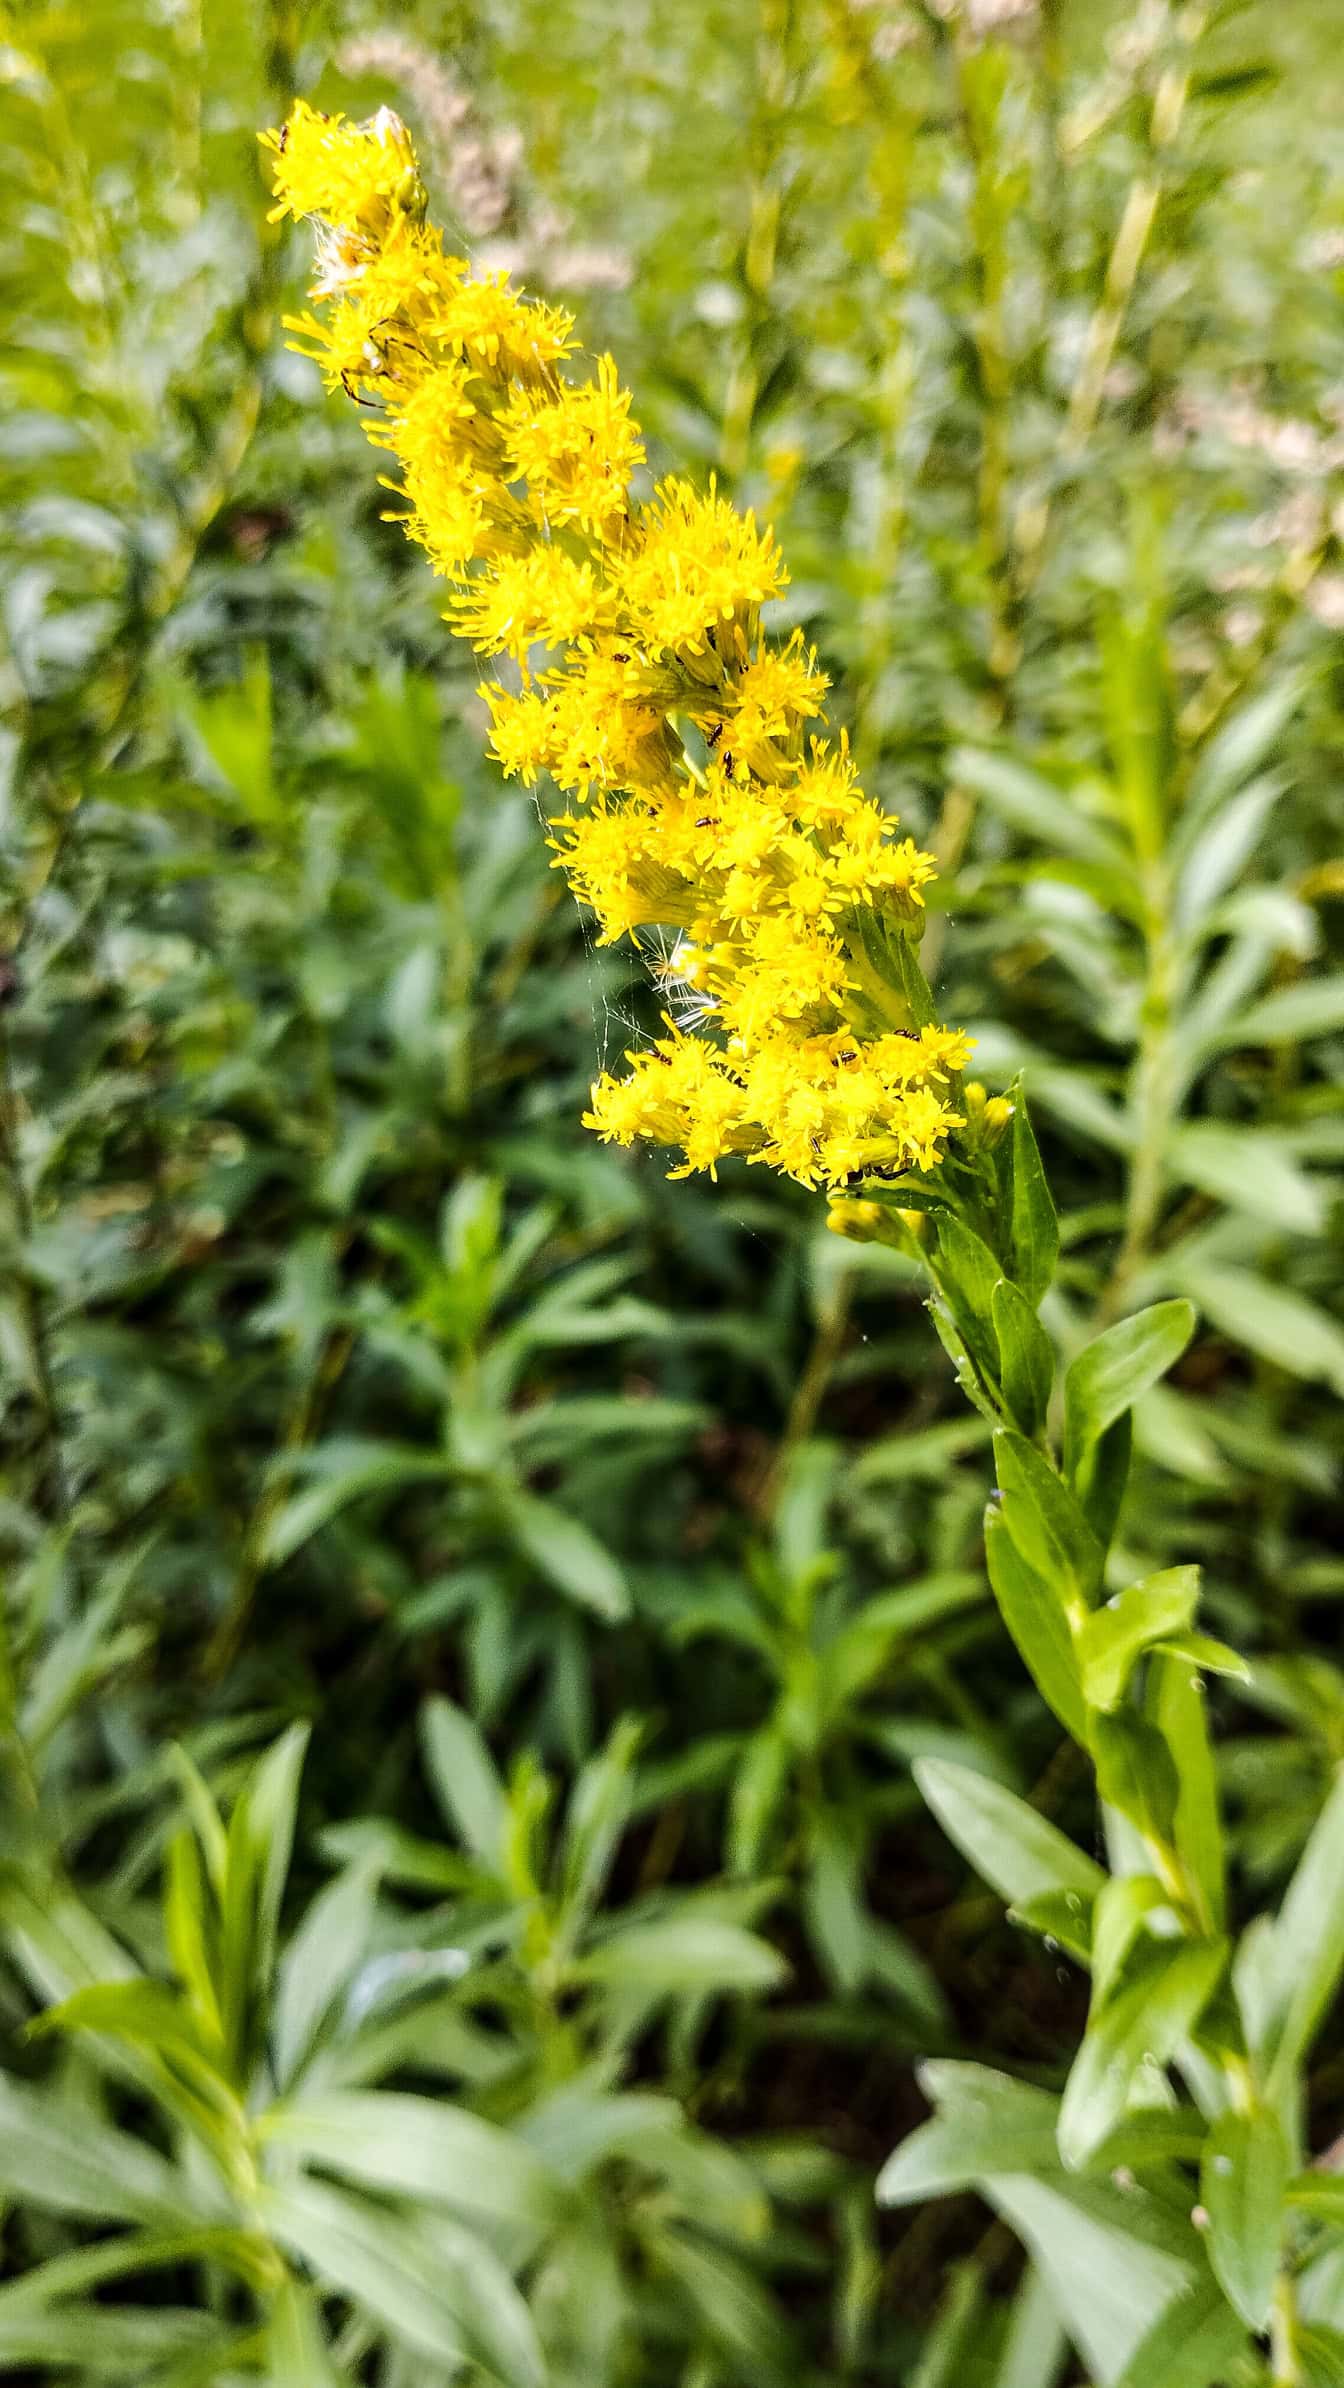 Квітка, відома як золотарник канадський, (Solidago canadensis) жовта квітка в повному розквіті